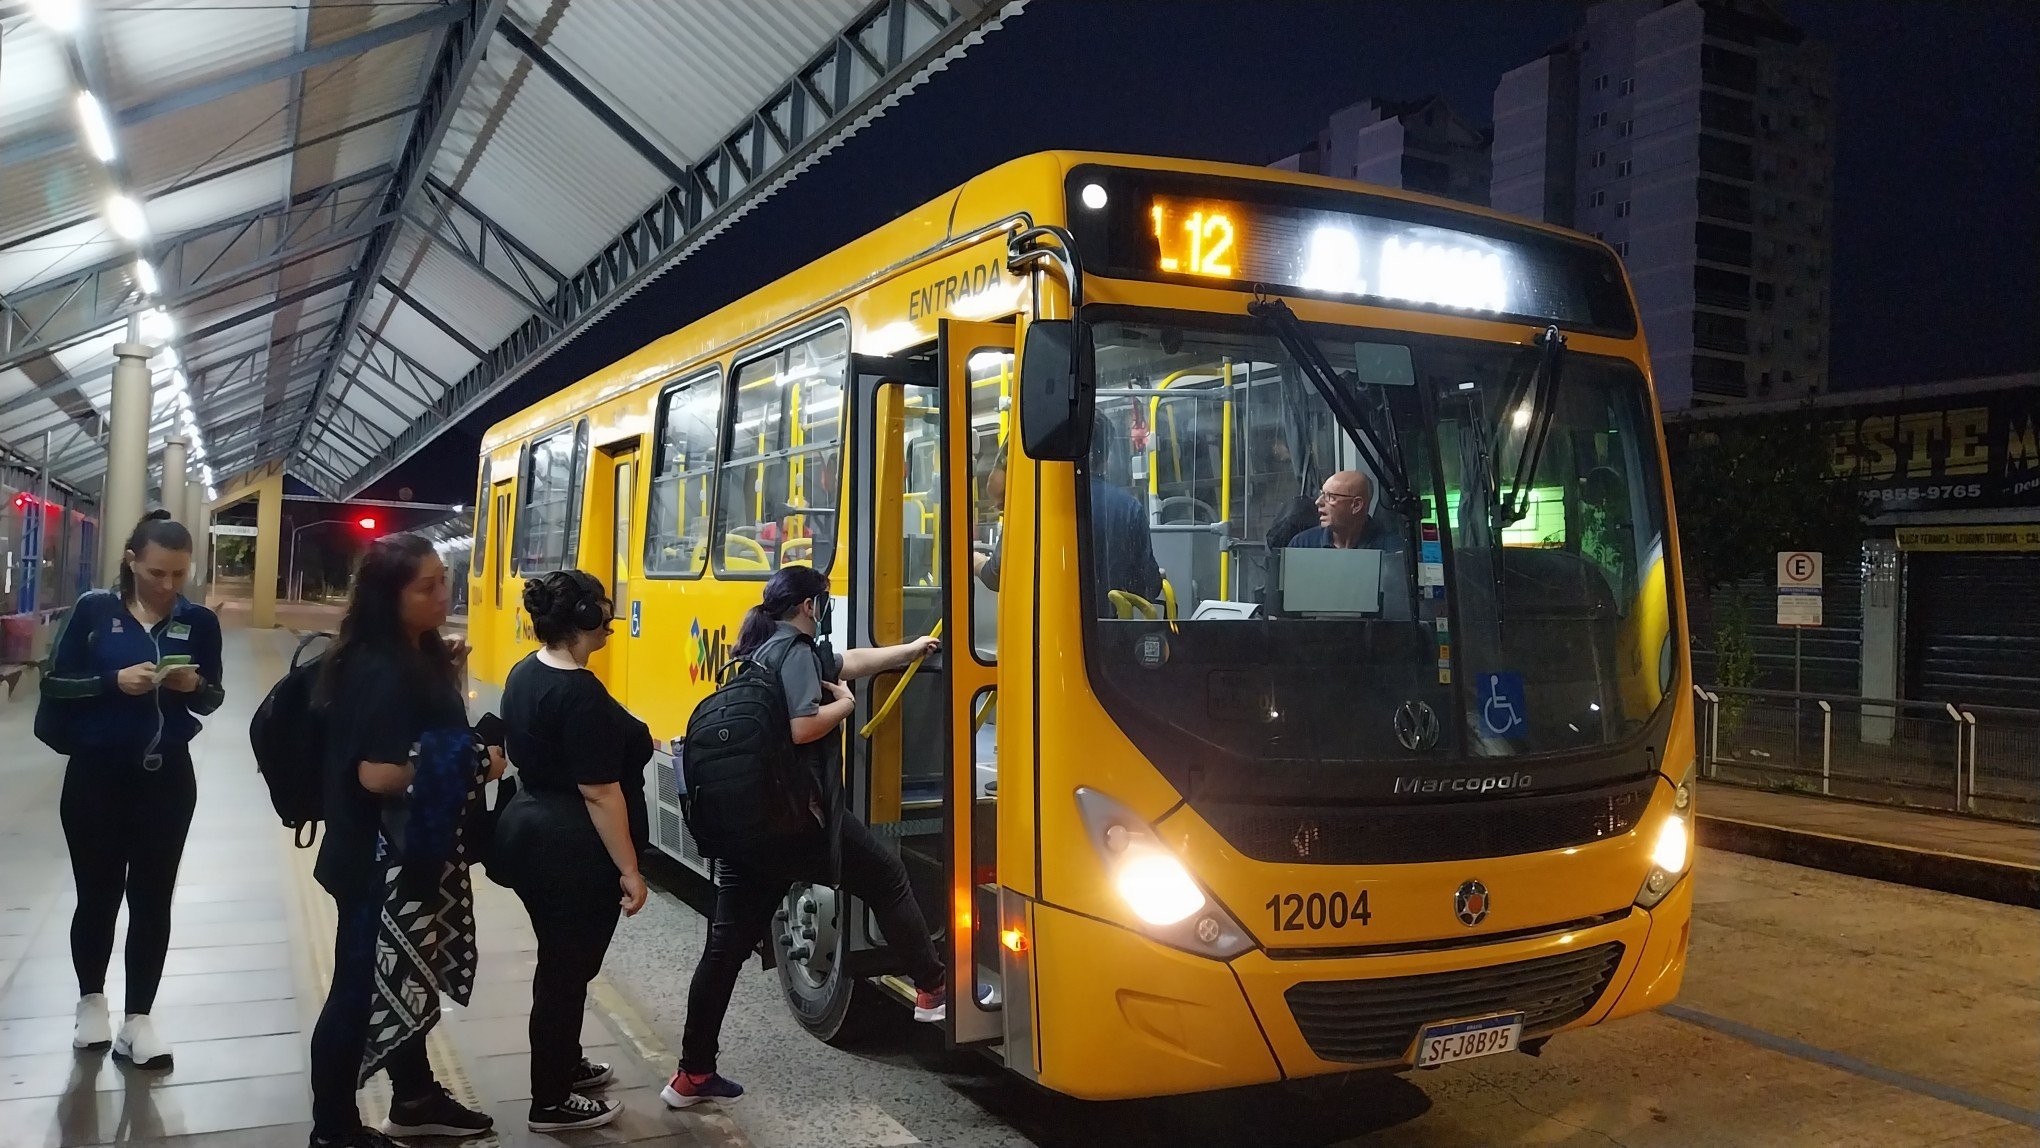 NOVO HAMBURGO: Operação dos novos ônibus começa com atrasos; veja o que diz a empresa